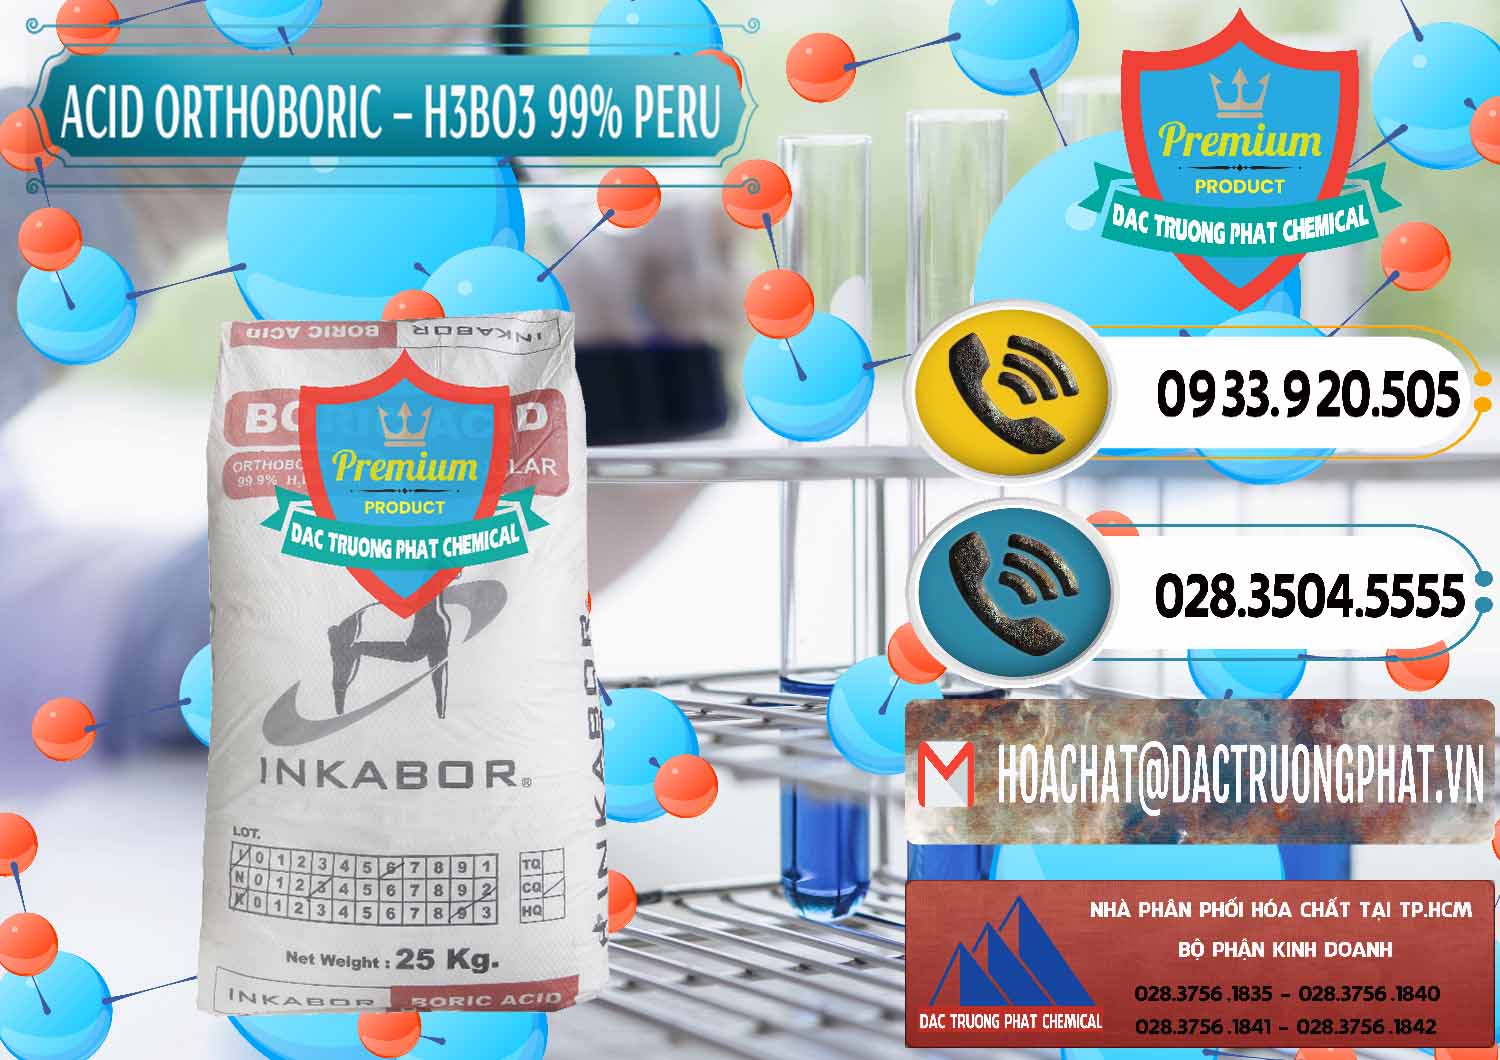 Chuyên kinh doanh _ bán Acid Boric – Axit Boric H3BO3 99% Inkabor Peru - 0280 - Cung ứng & phân phối hóa chất tại TP.HCM - hoachatdetnhuom.vn